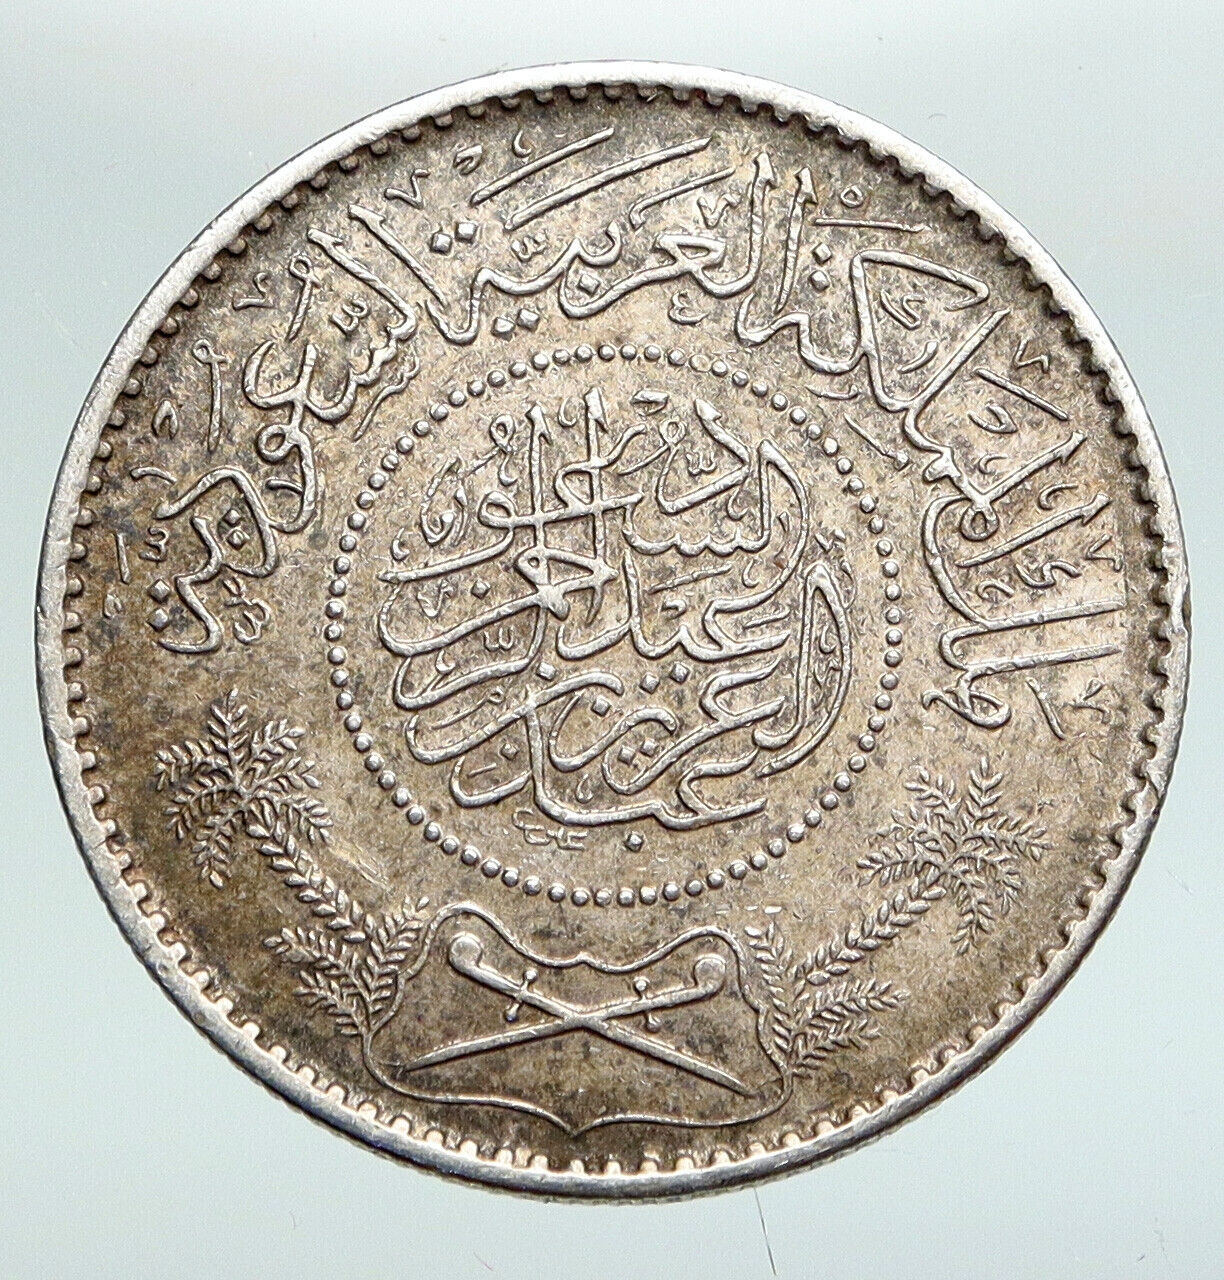 United Arab Emirates Coins - Coin catalog - bitcoinhelp.fun